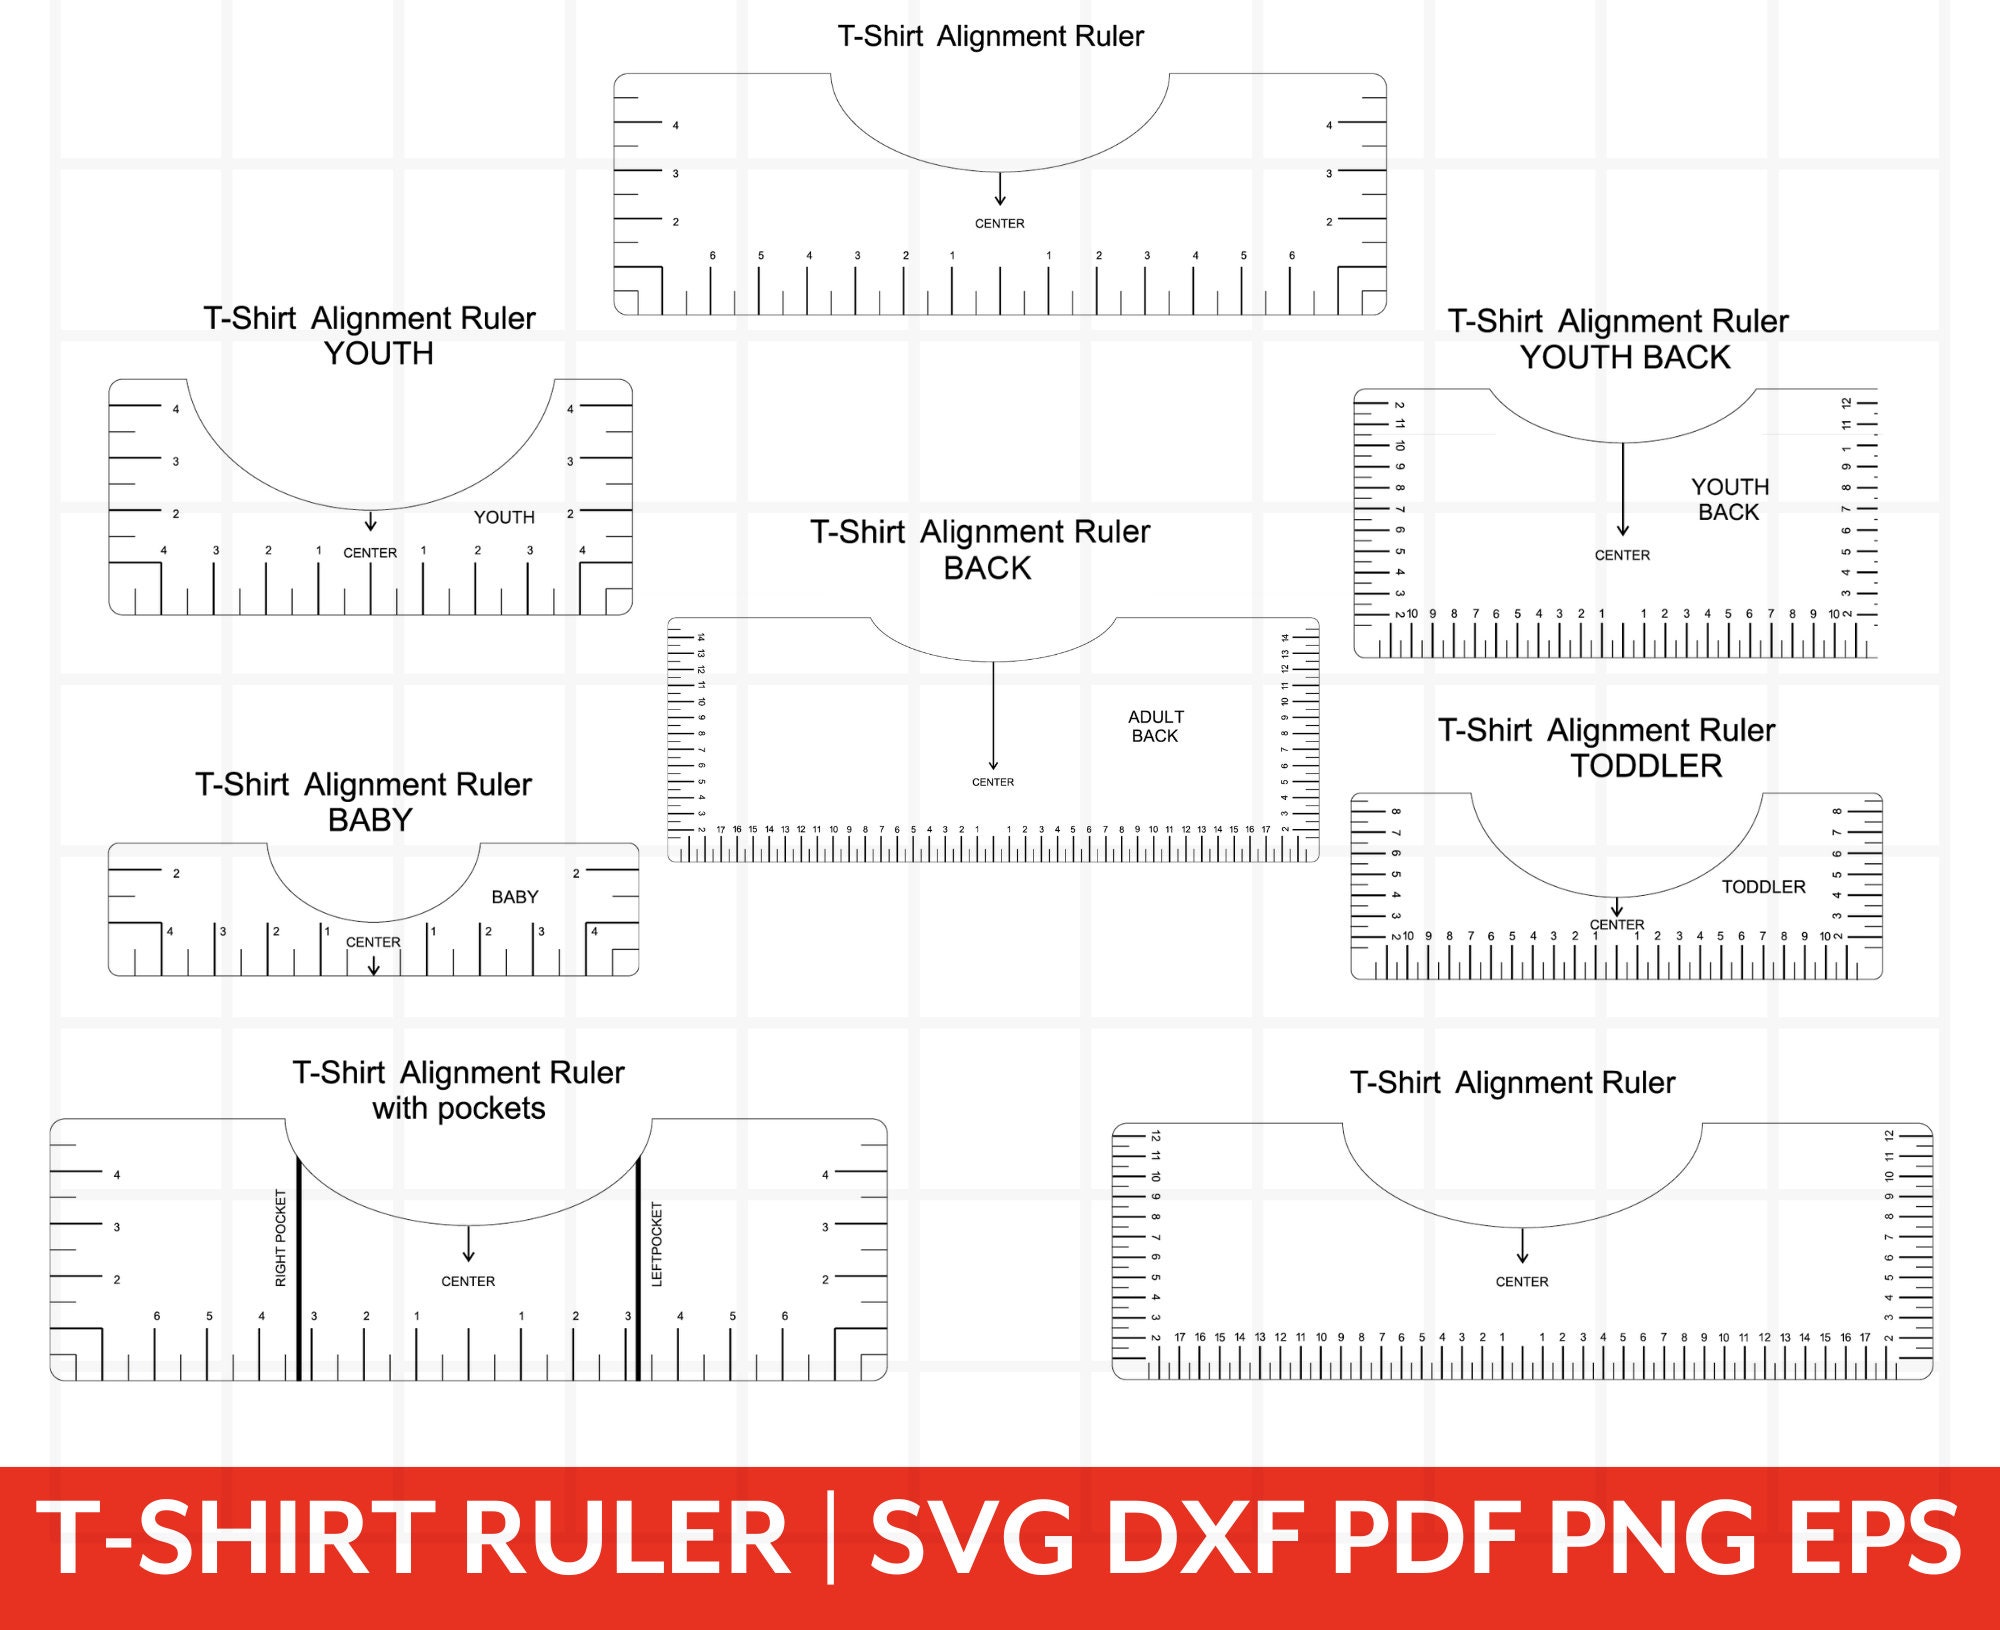 T-shirt HTV Vinyl Alignment Ruler Tool/guide, for Vinyl Cut or